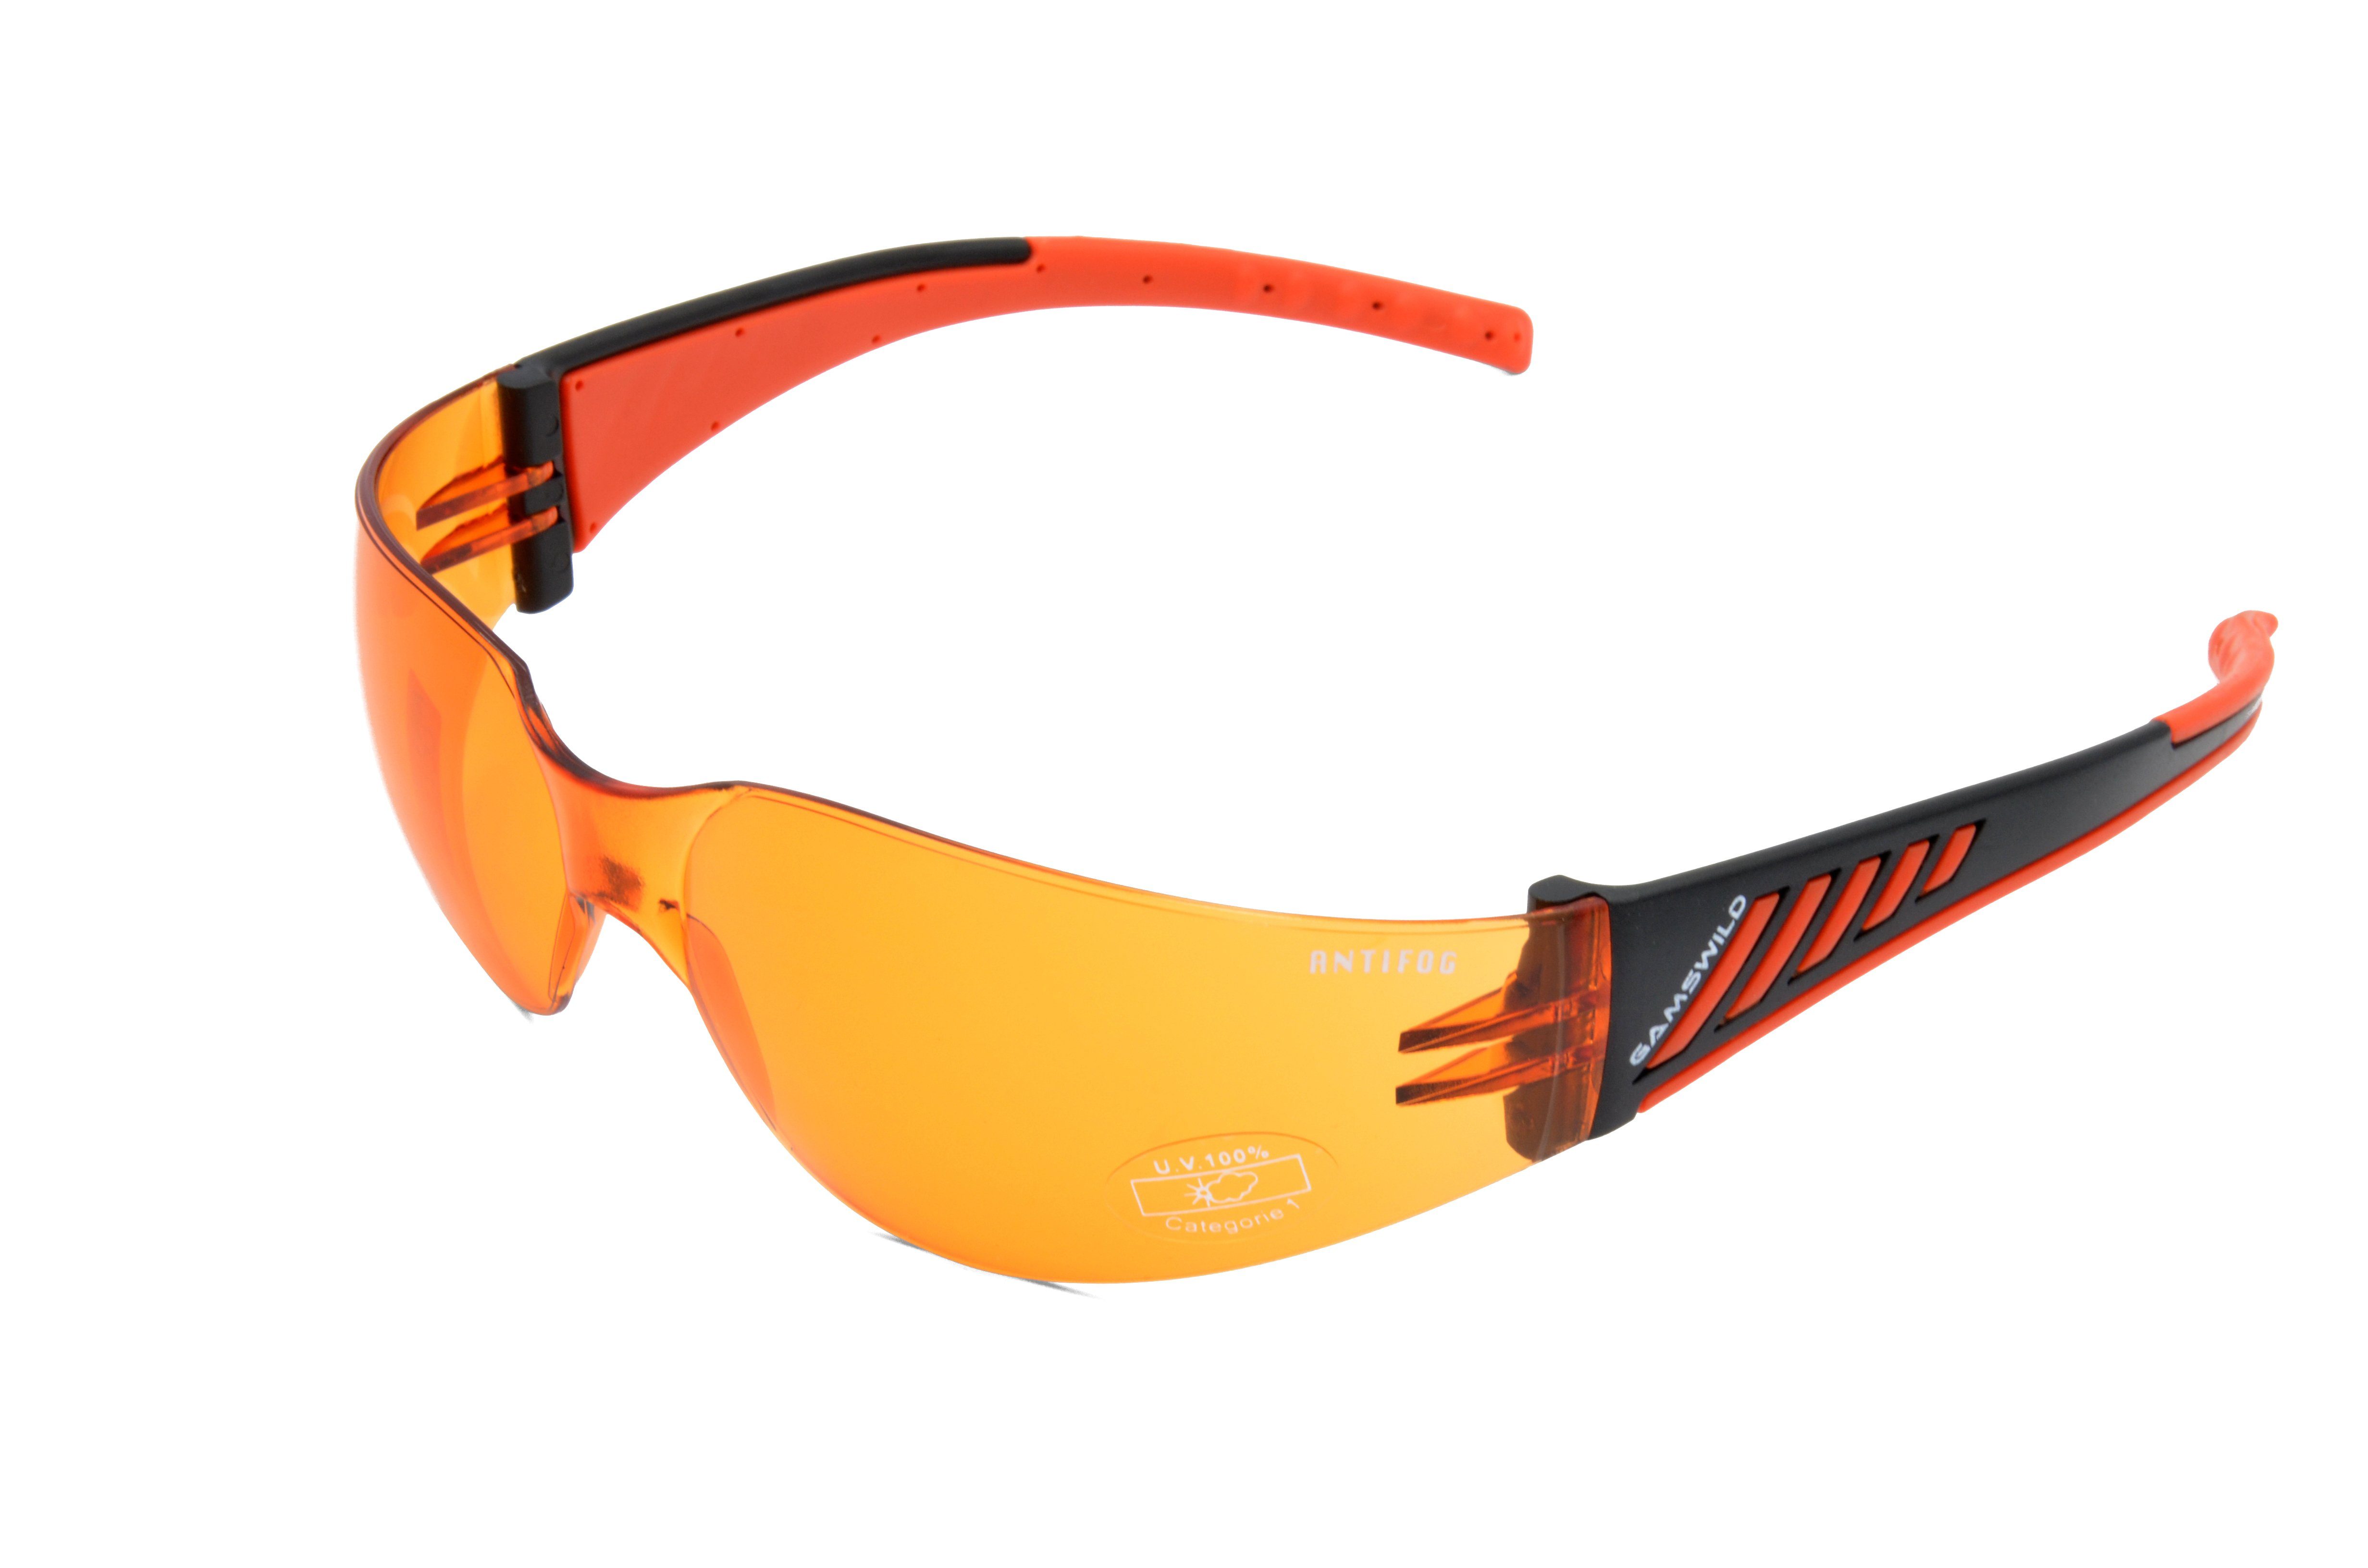 Gamswild Sportbrille WS7122 Skibrille orange, Herren Sonnenbrille grau, Fahrradbrille ANTIFOG Damen Unisex, brau